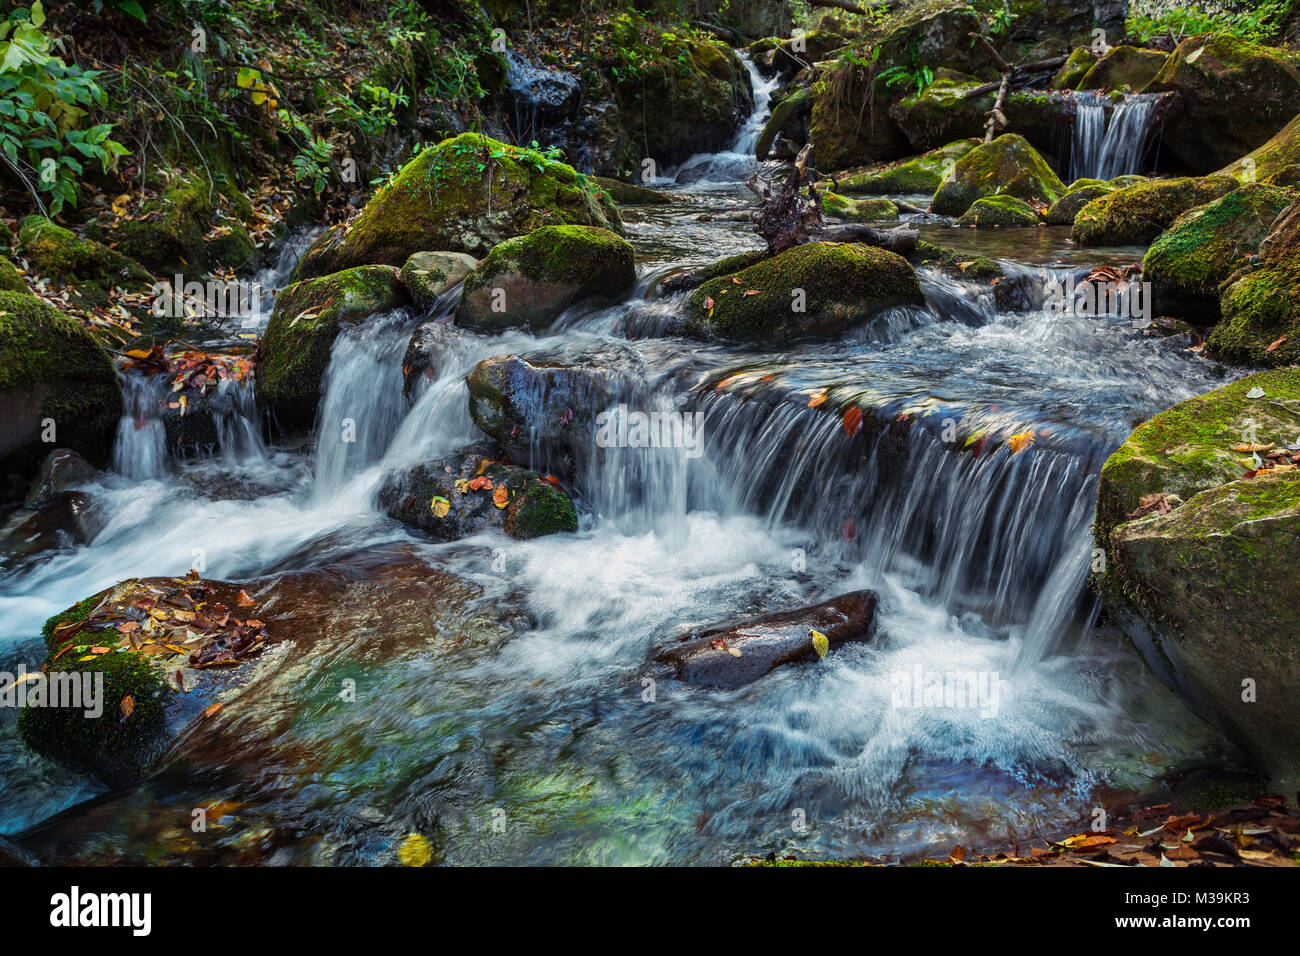 La corriente de Orfento fluye en el corazón del Parque Nacional Majella. La presencia de la nutria atestigua la pureza de sus aguas. Abruzzo, Italia Foto de stock